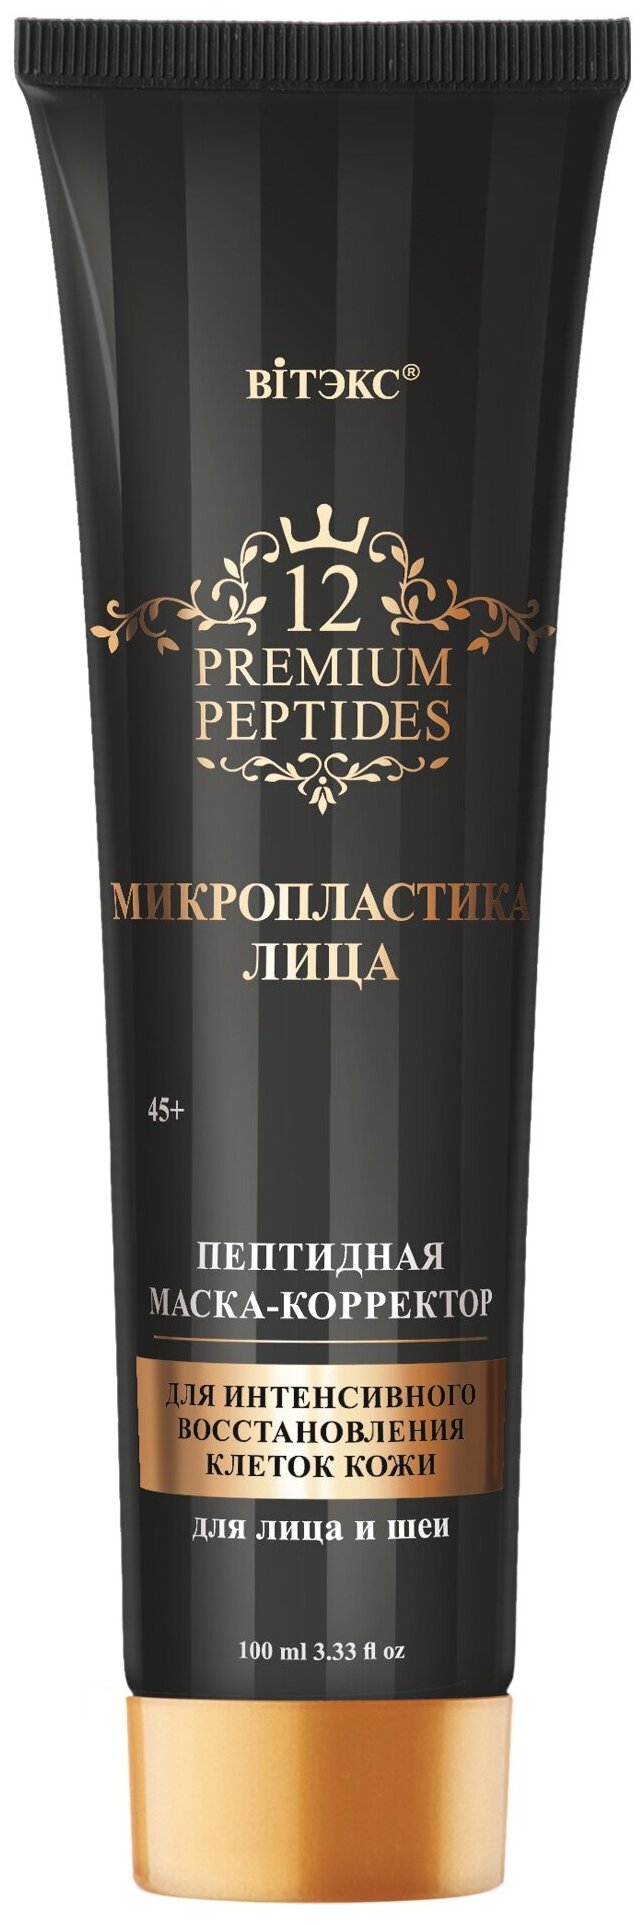 Маска Вiтэкс 12 Premium Peptides Пептидная маска- корректор "для интенсивного восстановления клеток кожи" для лица и шеи 45+ 100 мл.